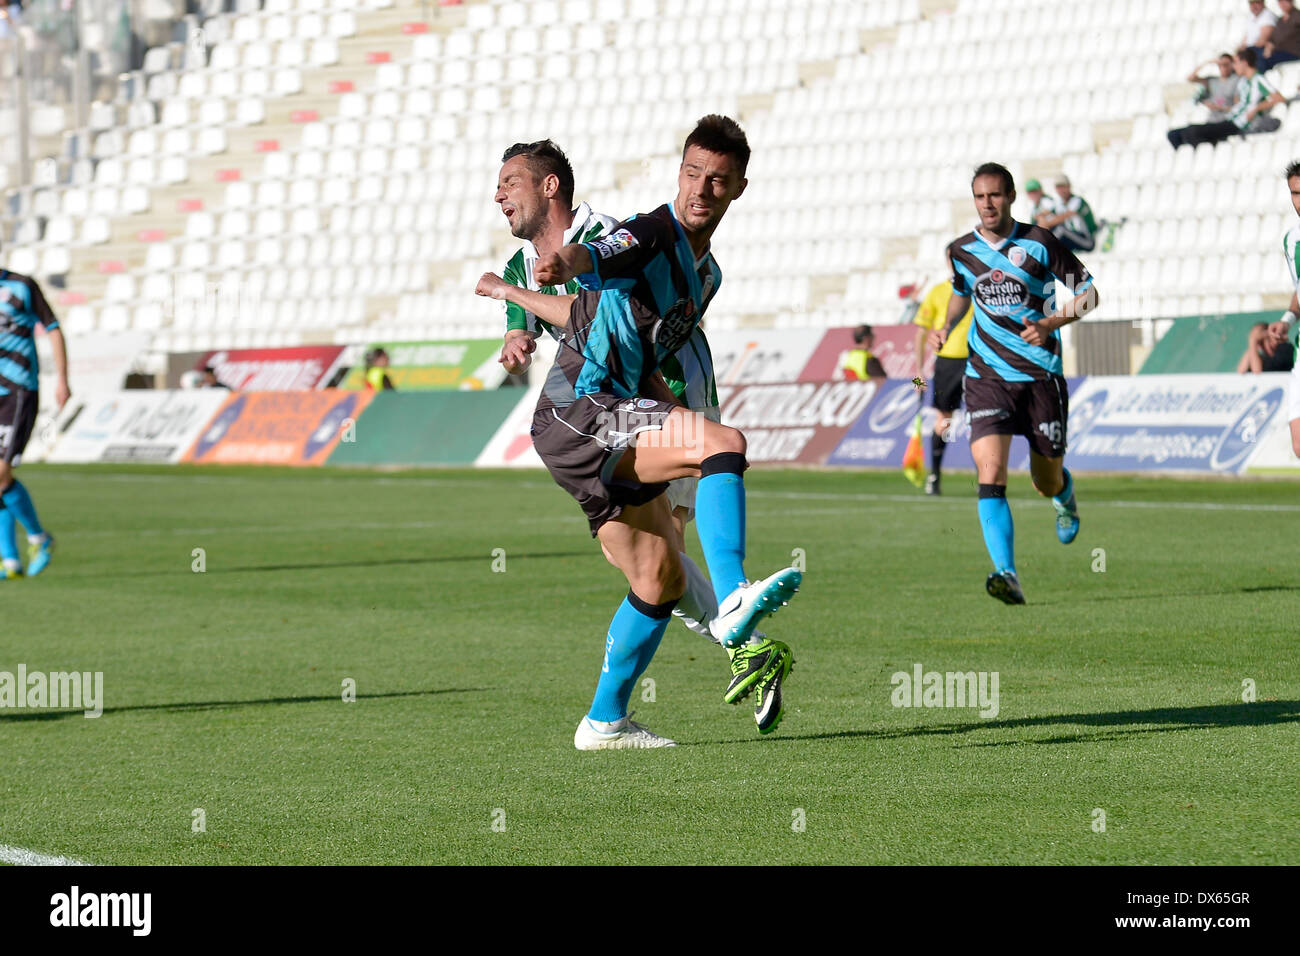 CORDOBA, Spanien - März 16: López Silva W(19) in Aktion während Spiel Liga Cordoba (W) Vs Lugo (B)(1-1) im städtischen Stadion Stockfoto